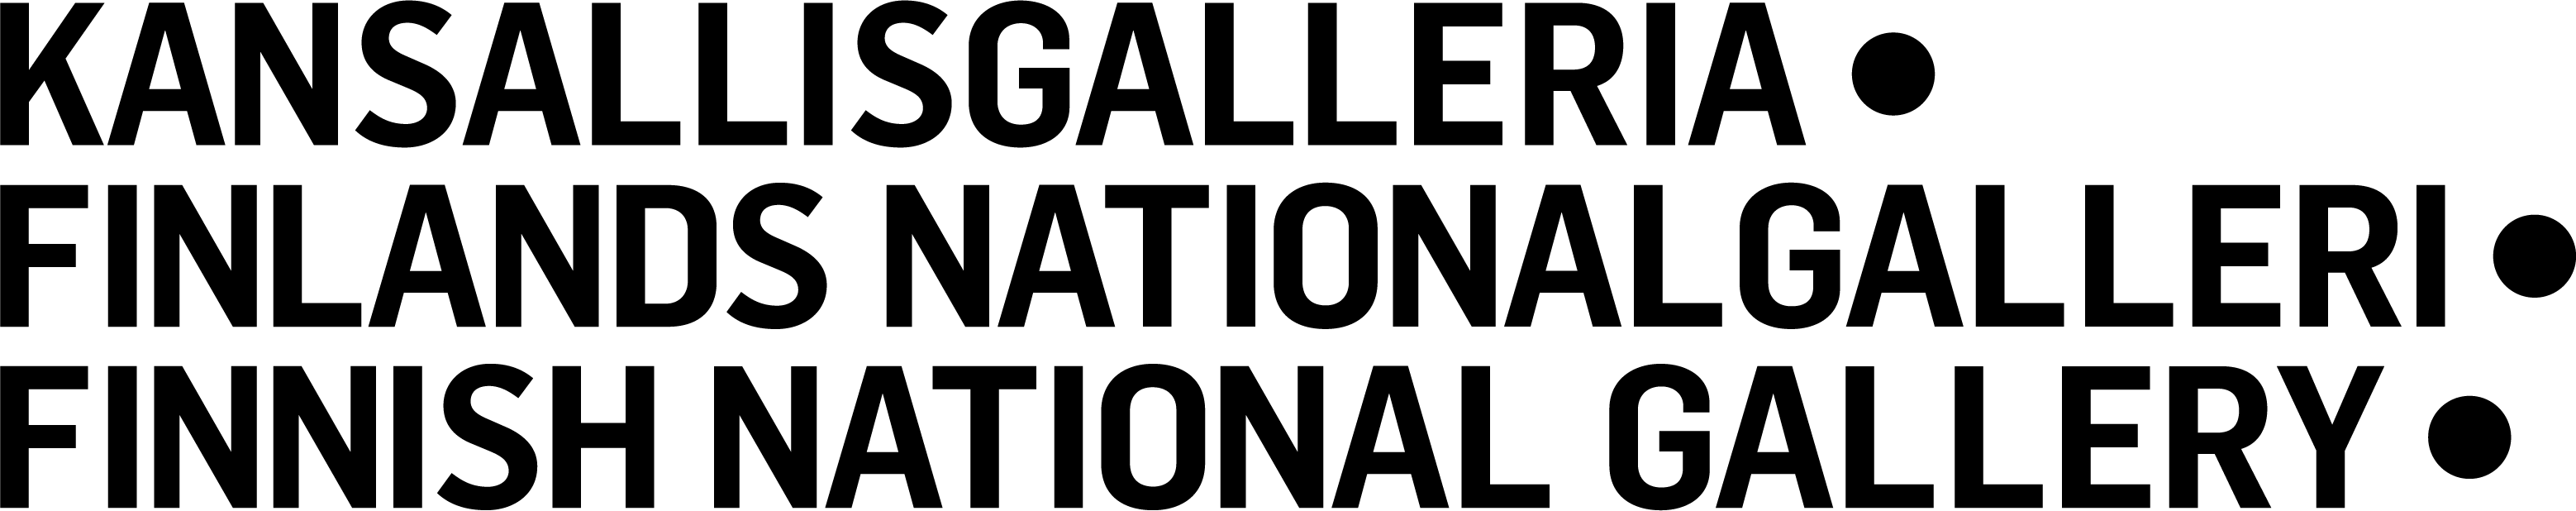 Kansallisgalleria logo